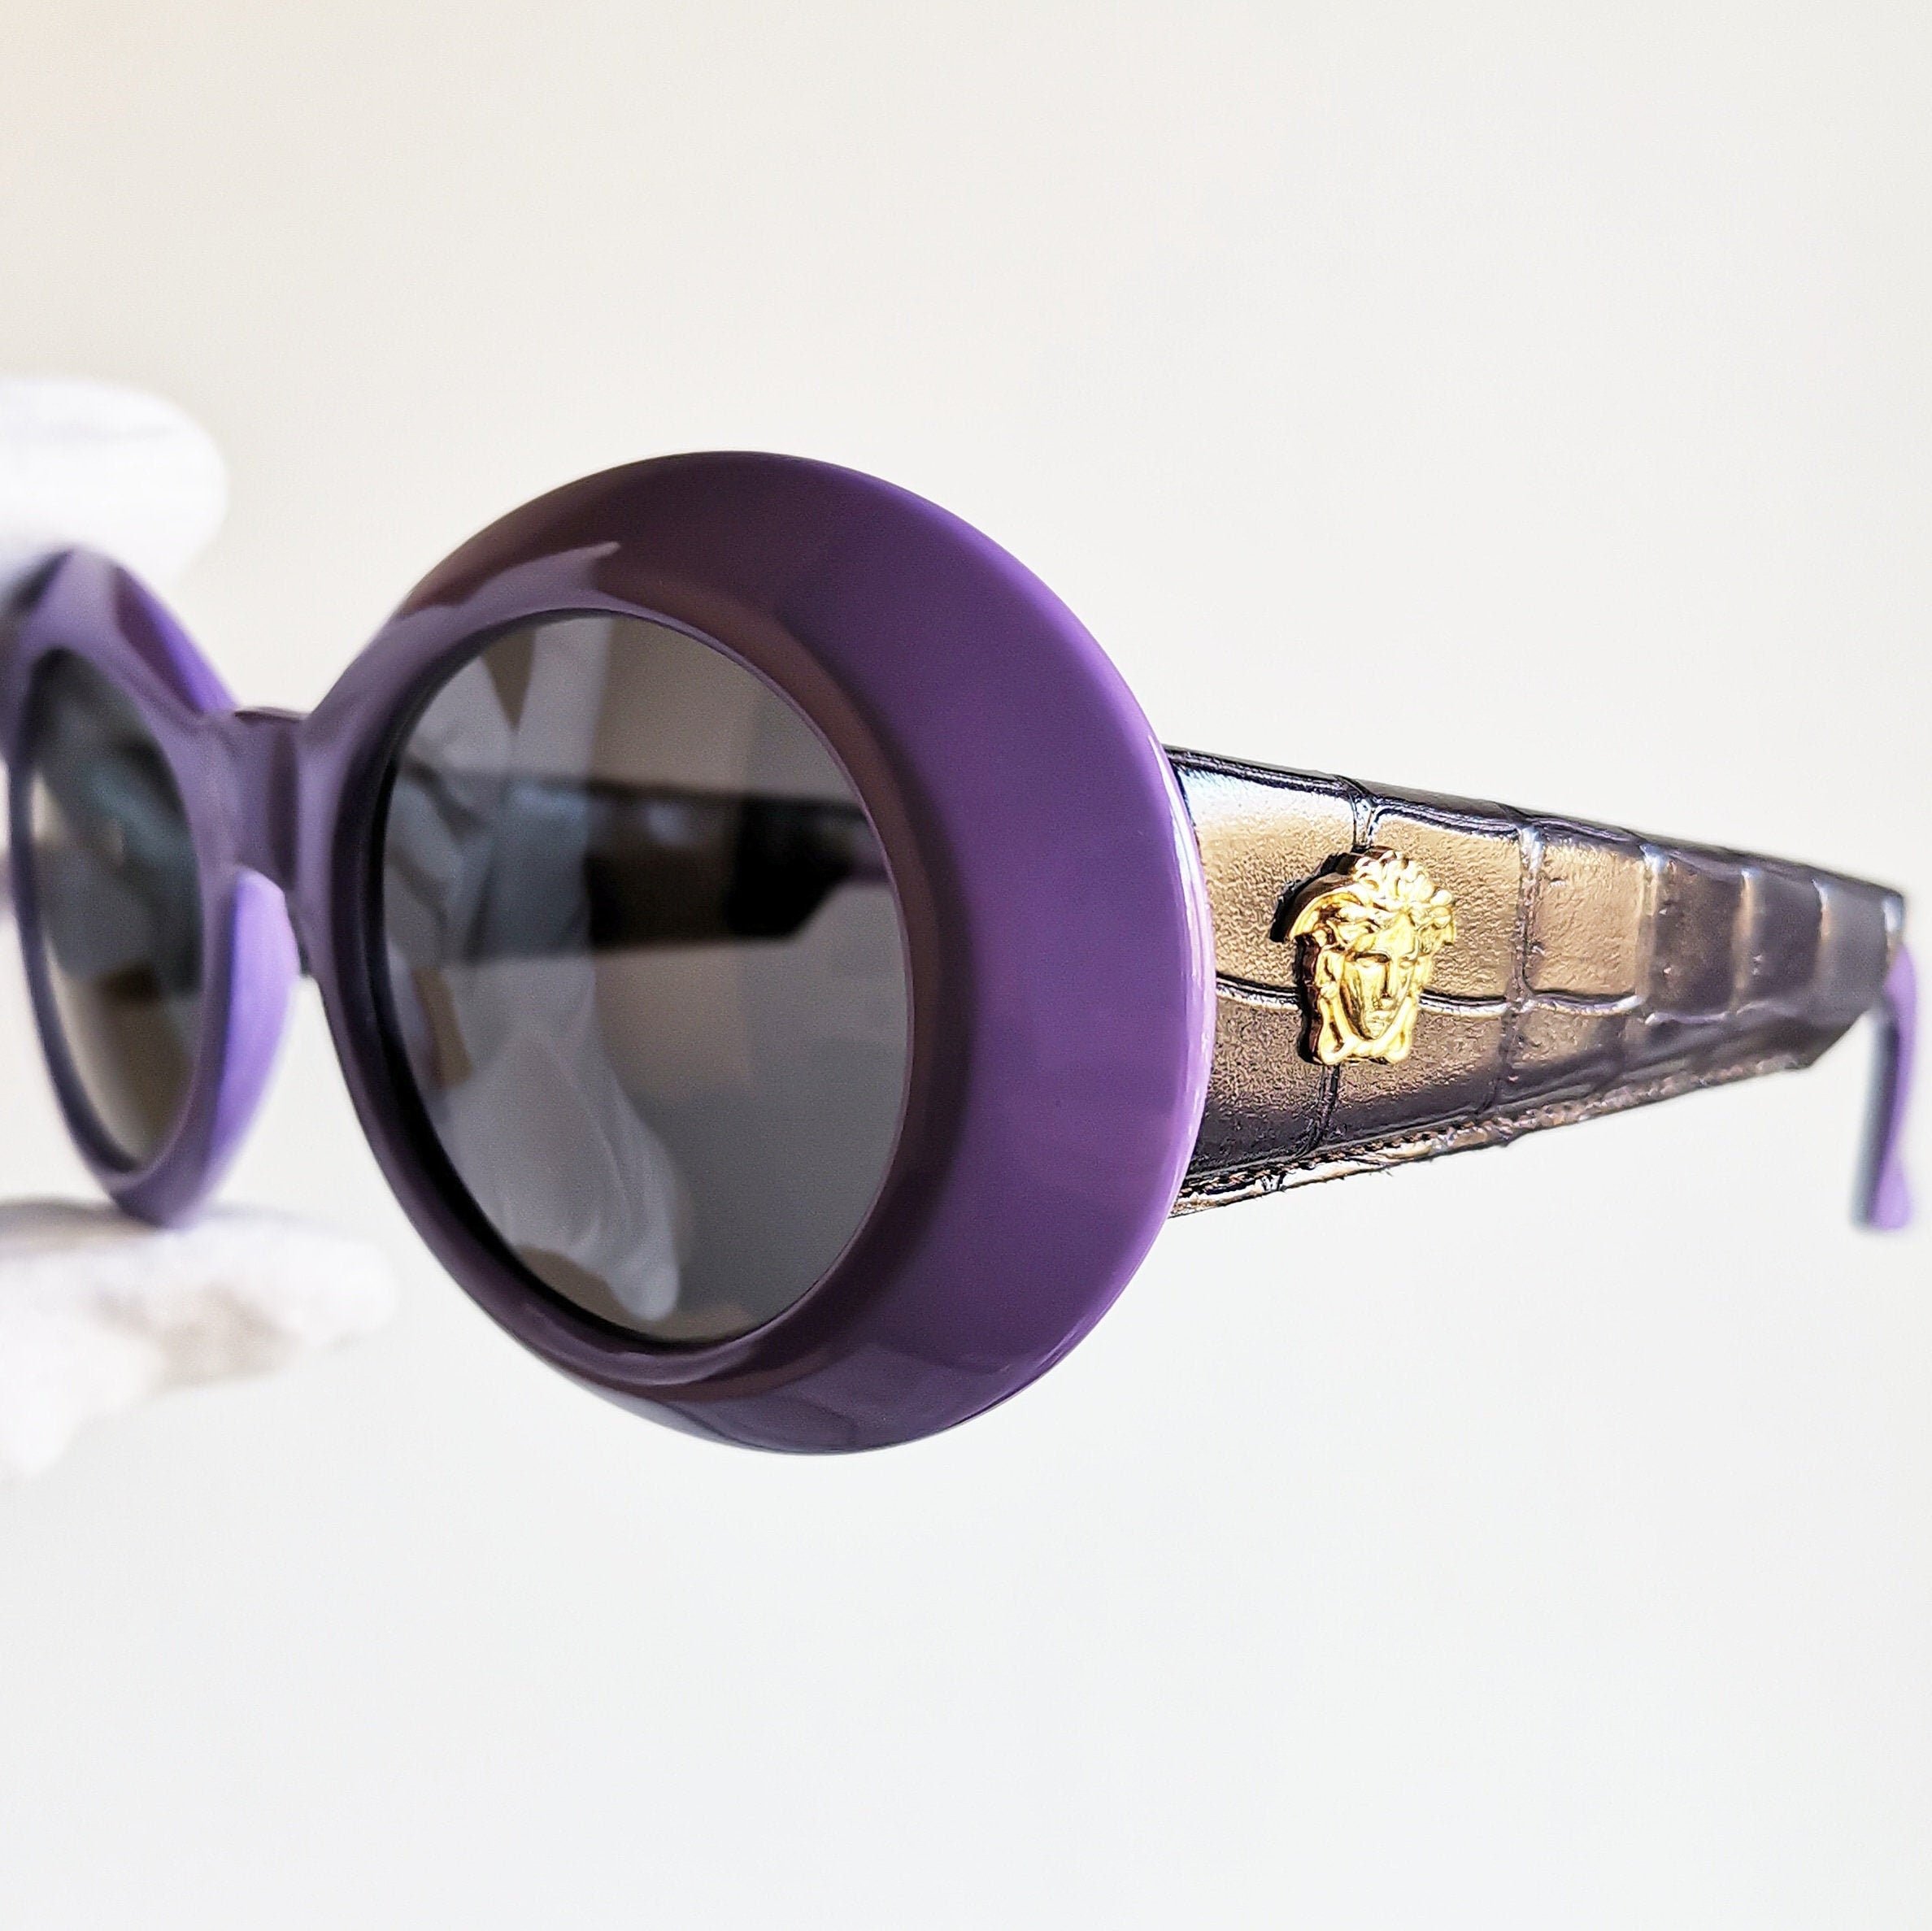 Buy VERSACE Vintage Sunglasses Rare Oval Wrap Mask Acid Purple